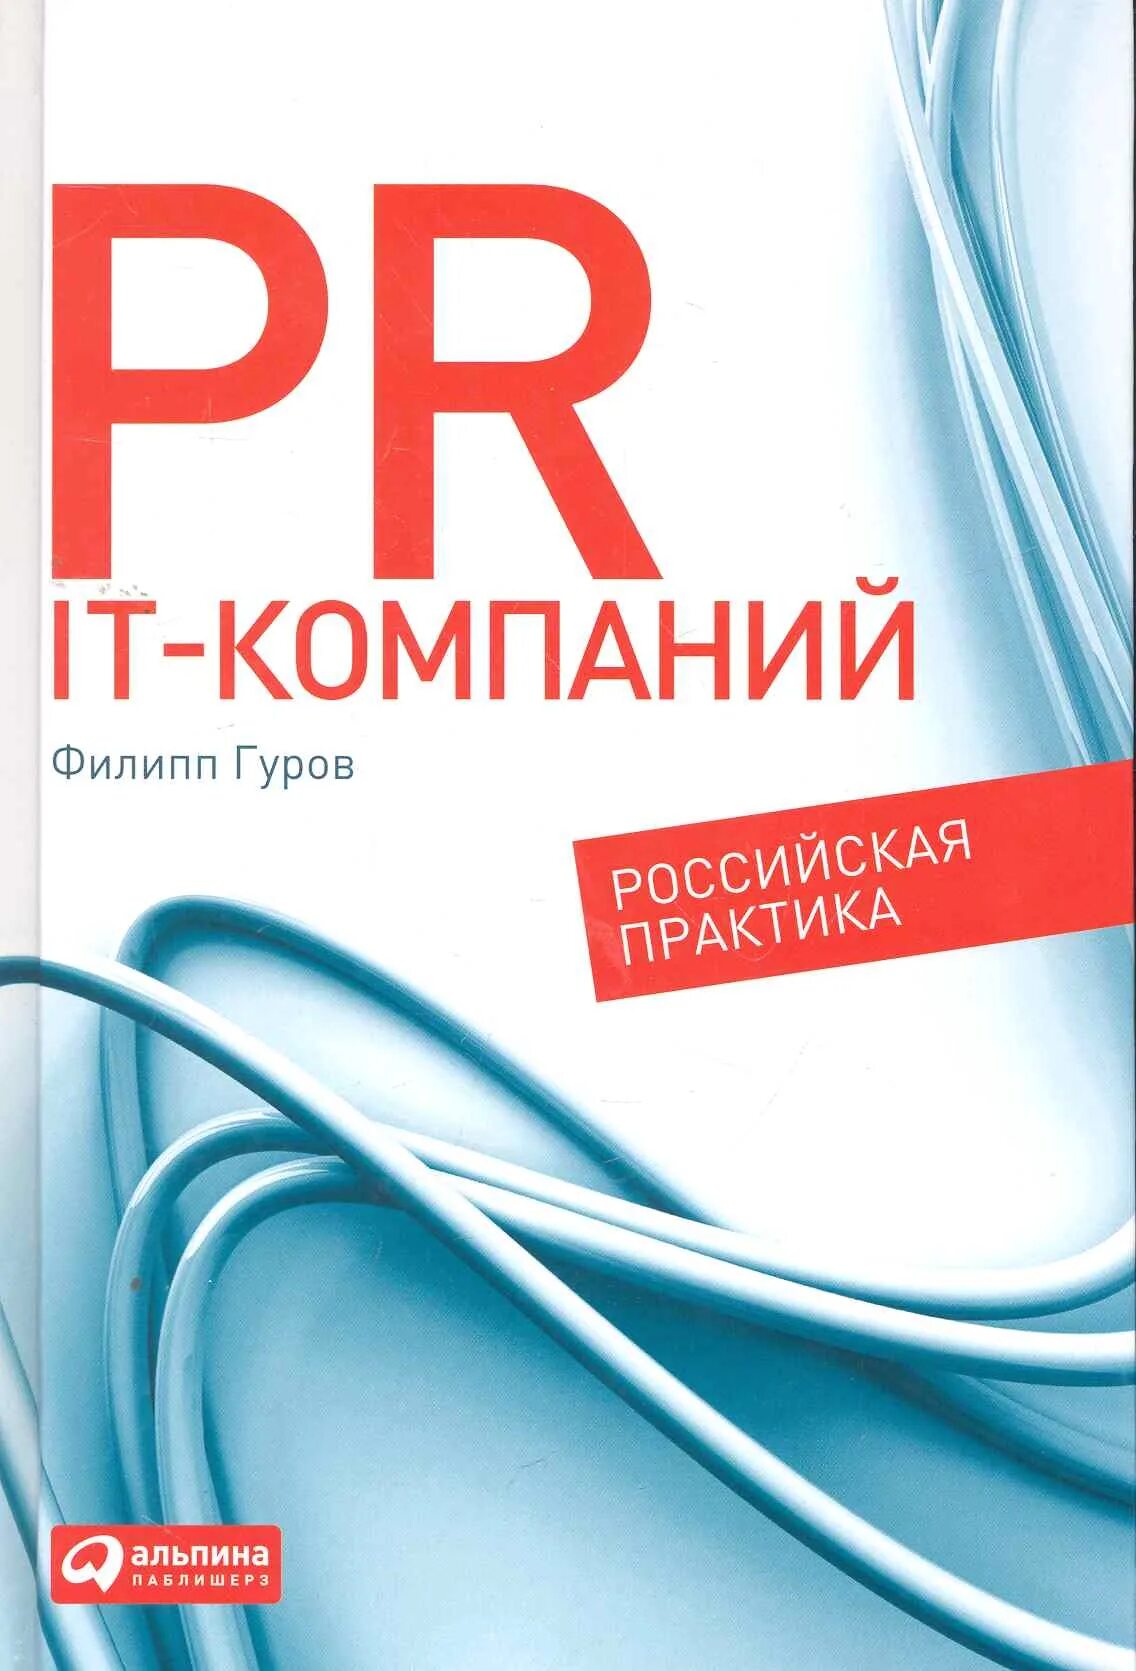 Книги про пиар. Российская практика изменениями